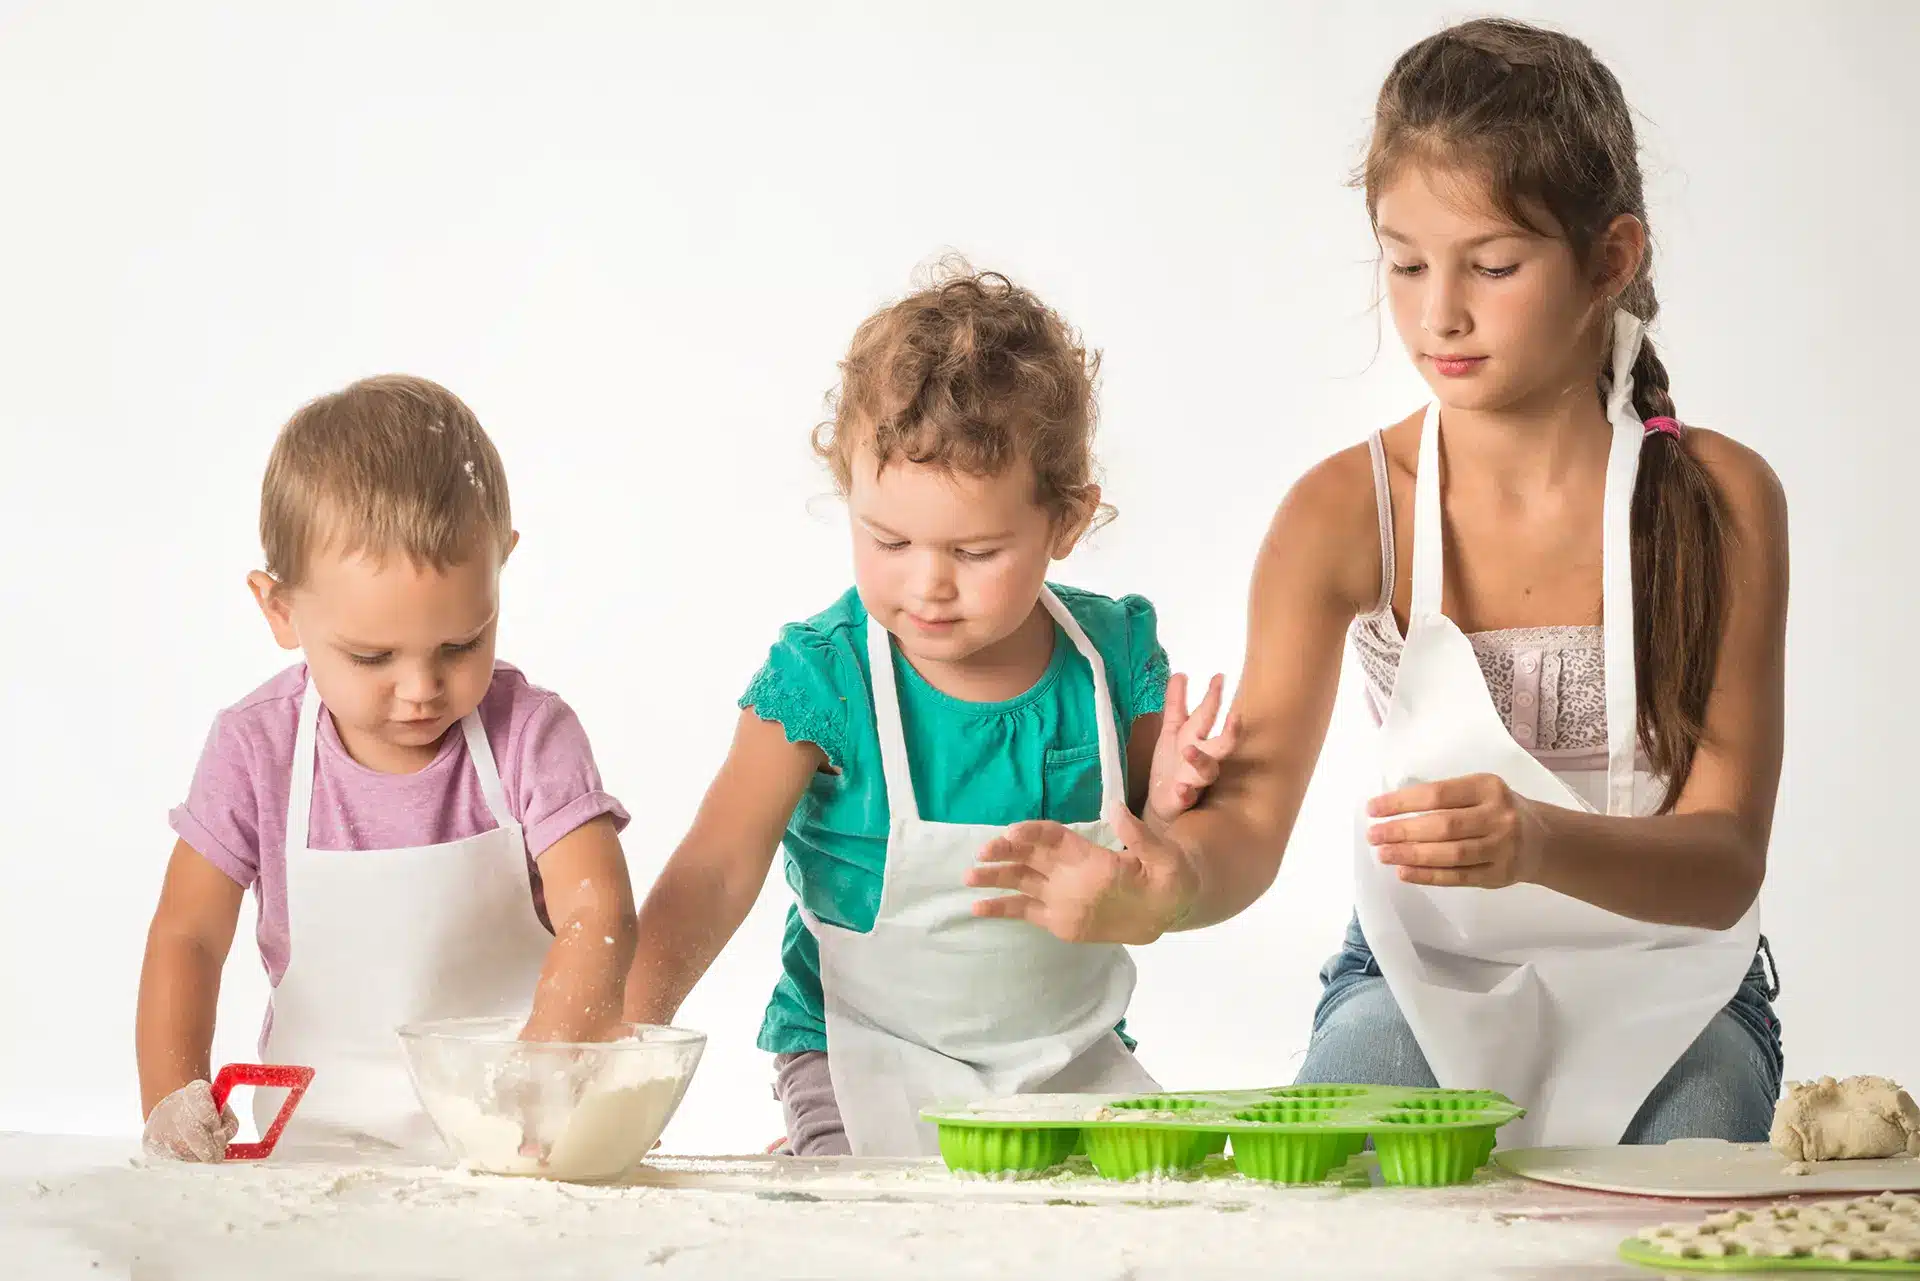 Montessori-Spiele zur Förderung der Selbstständigkeit von Kindern, 3 Kinder backen einen Kuchen ganz allein